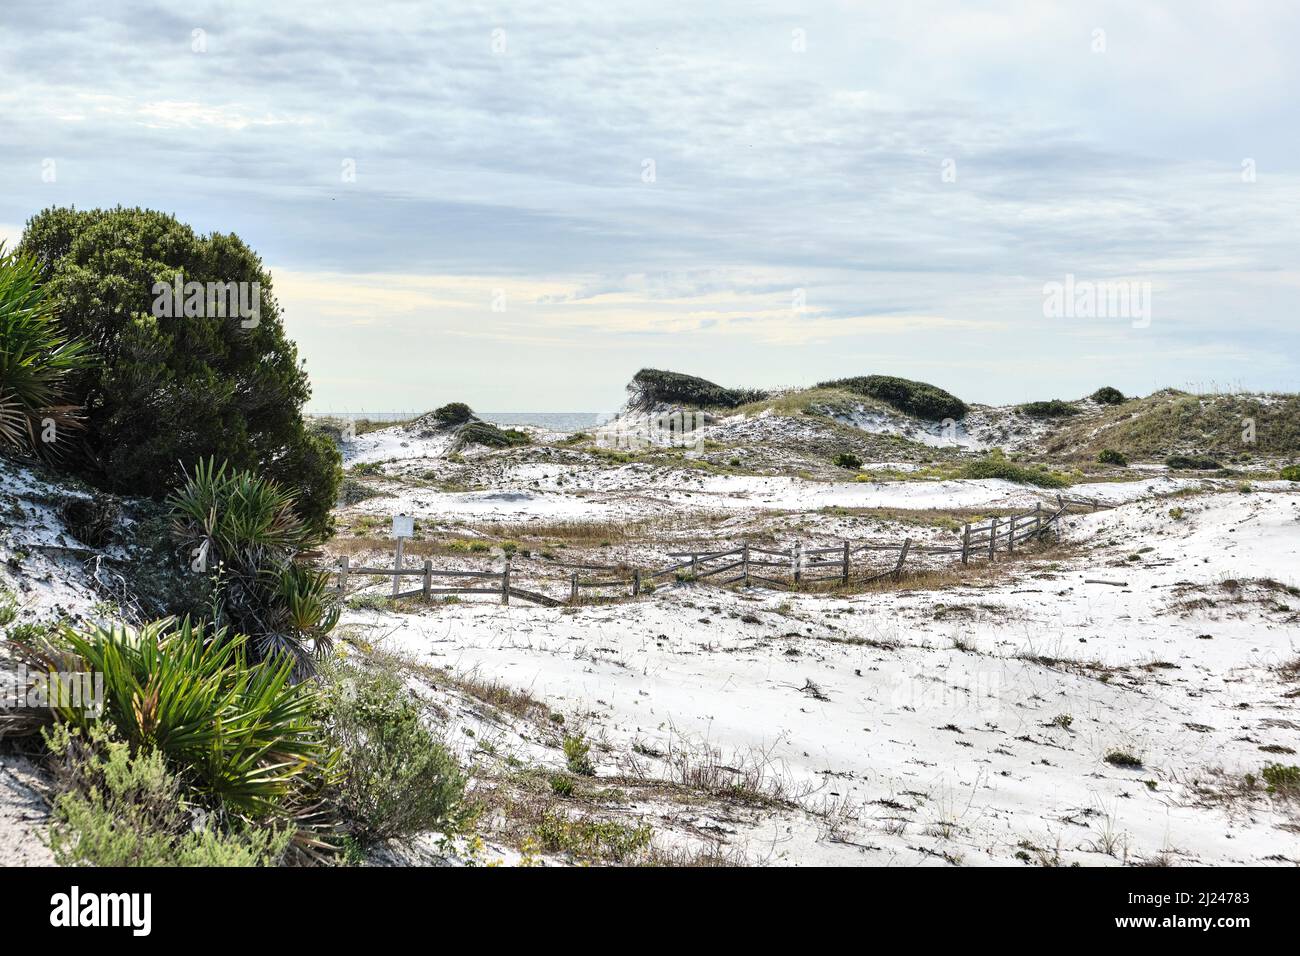 Florida Küste weiße Sanddünen und ein Split Rail Zaun in der Nähe der Florida Golfküste Strand in Watersound Florida, USA. Stockfoto